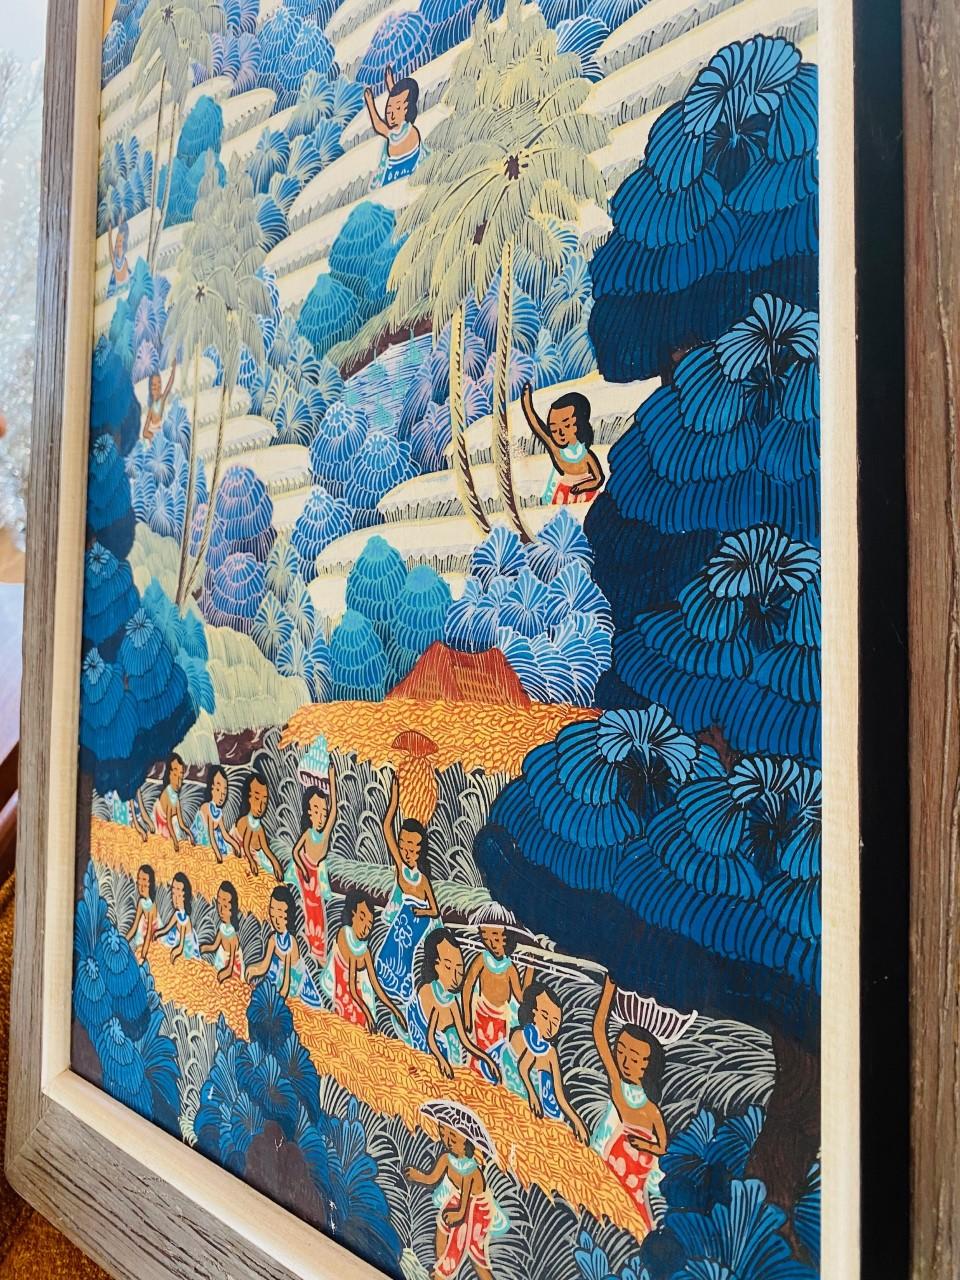 Wunderschönes Originalgemälde signiert von Kt. Teker, der das Leben in Penestanan darstellt. Diese schöne Darstellung von Penestanan auf Bali erweckt die Farben und die Landschaft zum Leben. Dieses Gemälde zeigt Frauen von der Insel, die fleißig an